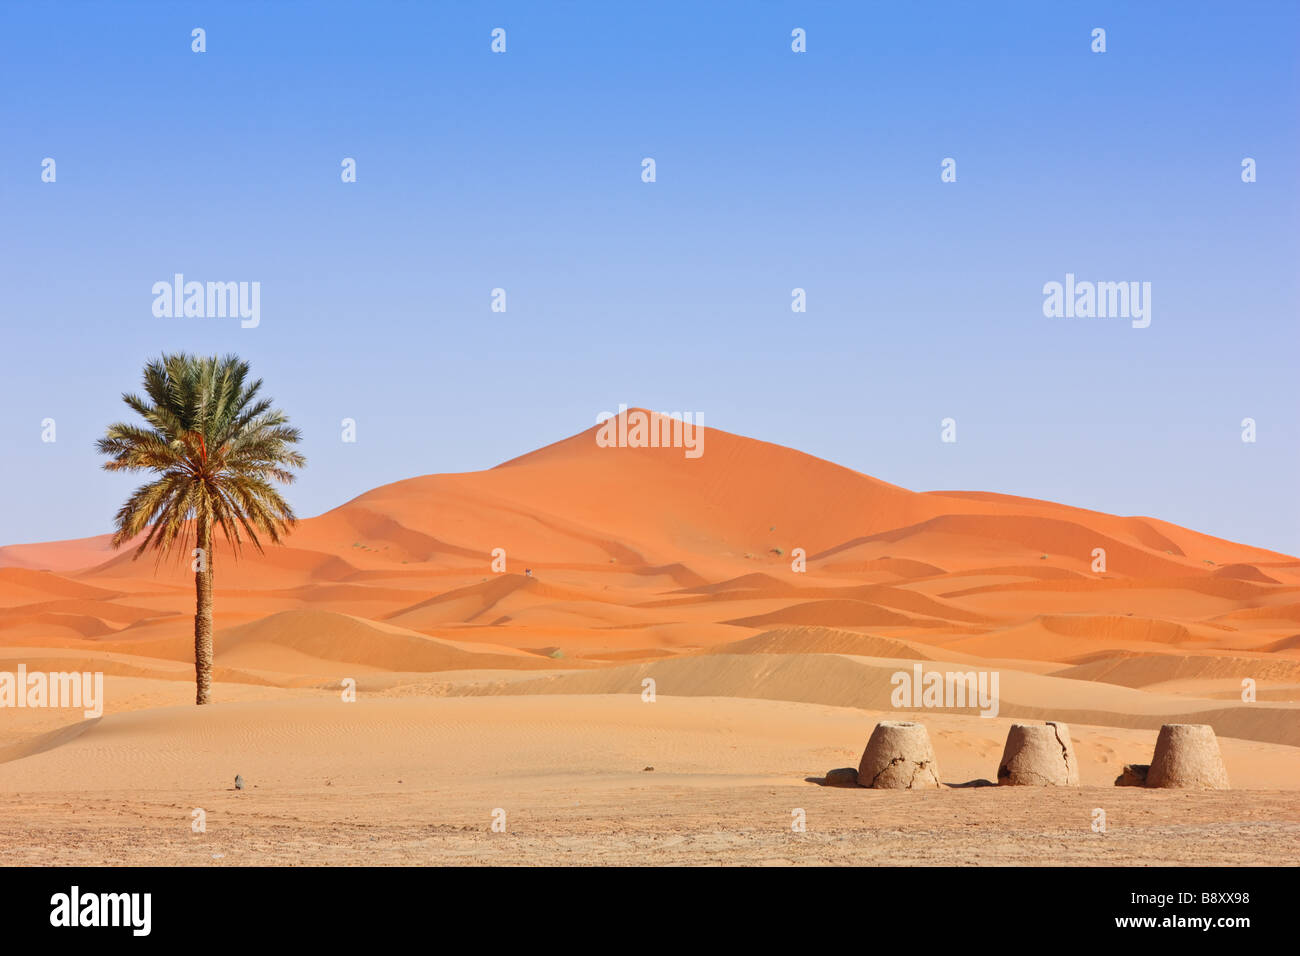 Beau paysage de désert Sahara Maroc Banque D'Images